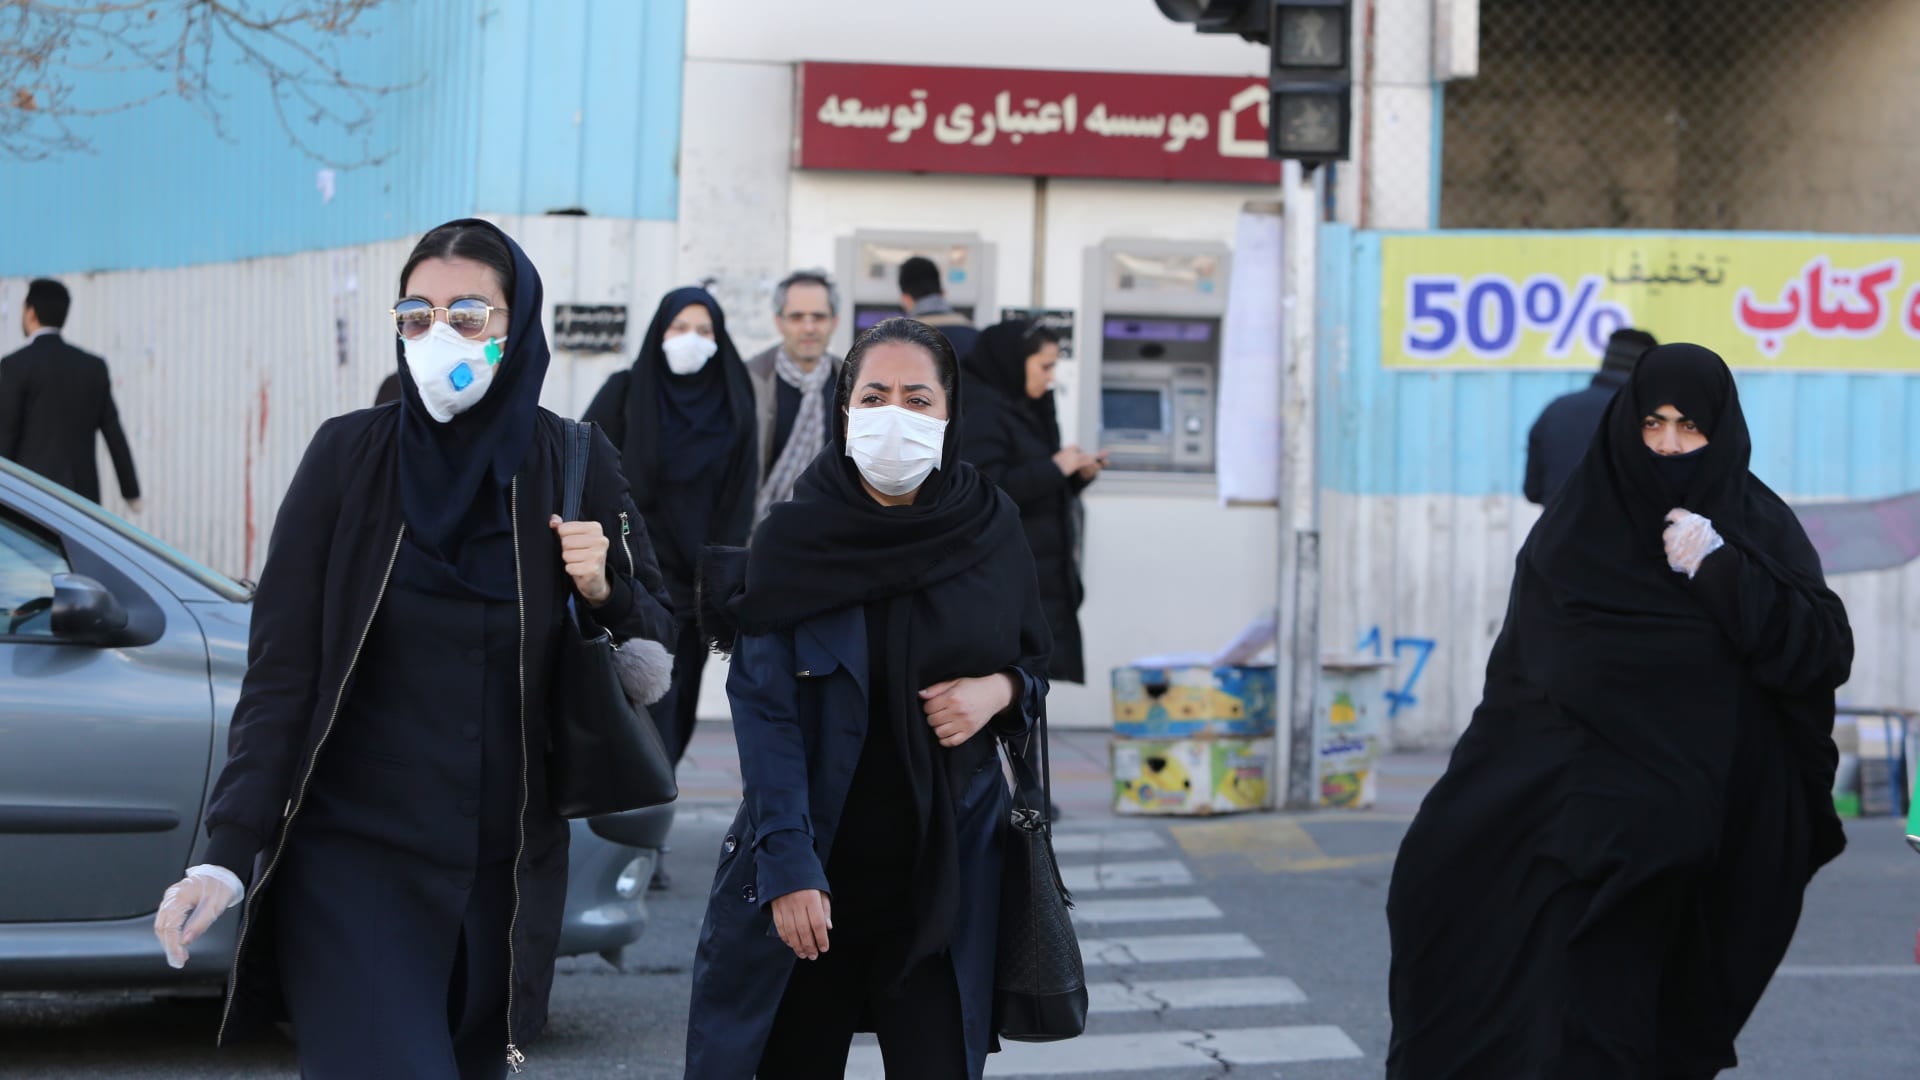 وزير الصحة: وفيات كورونا في إيران أكثر من قتلى الحرب مع العراق